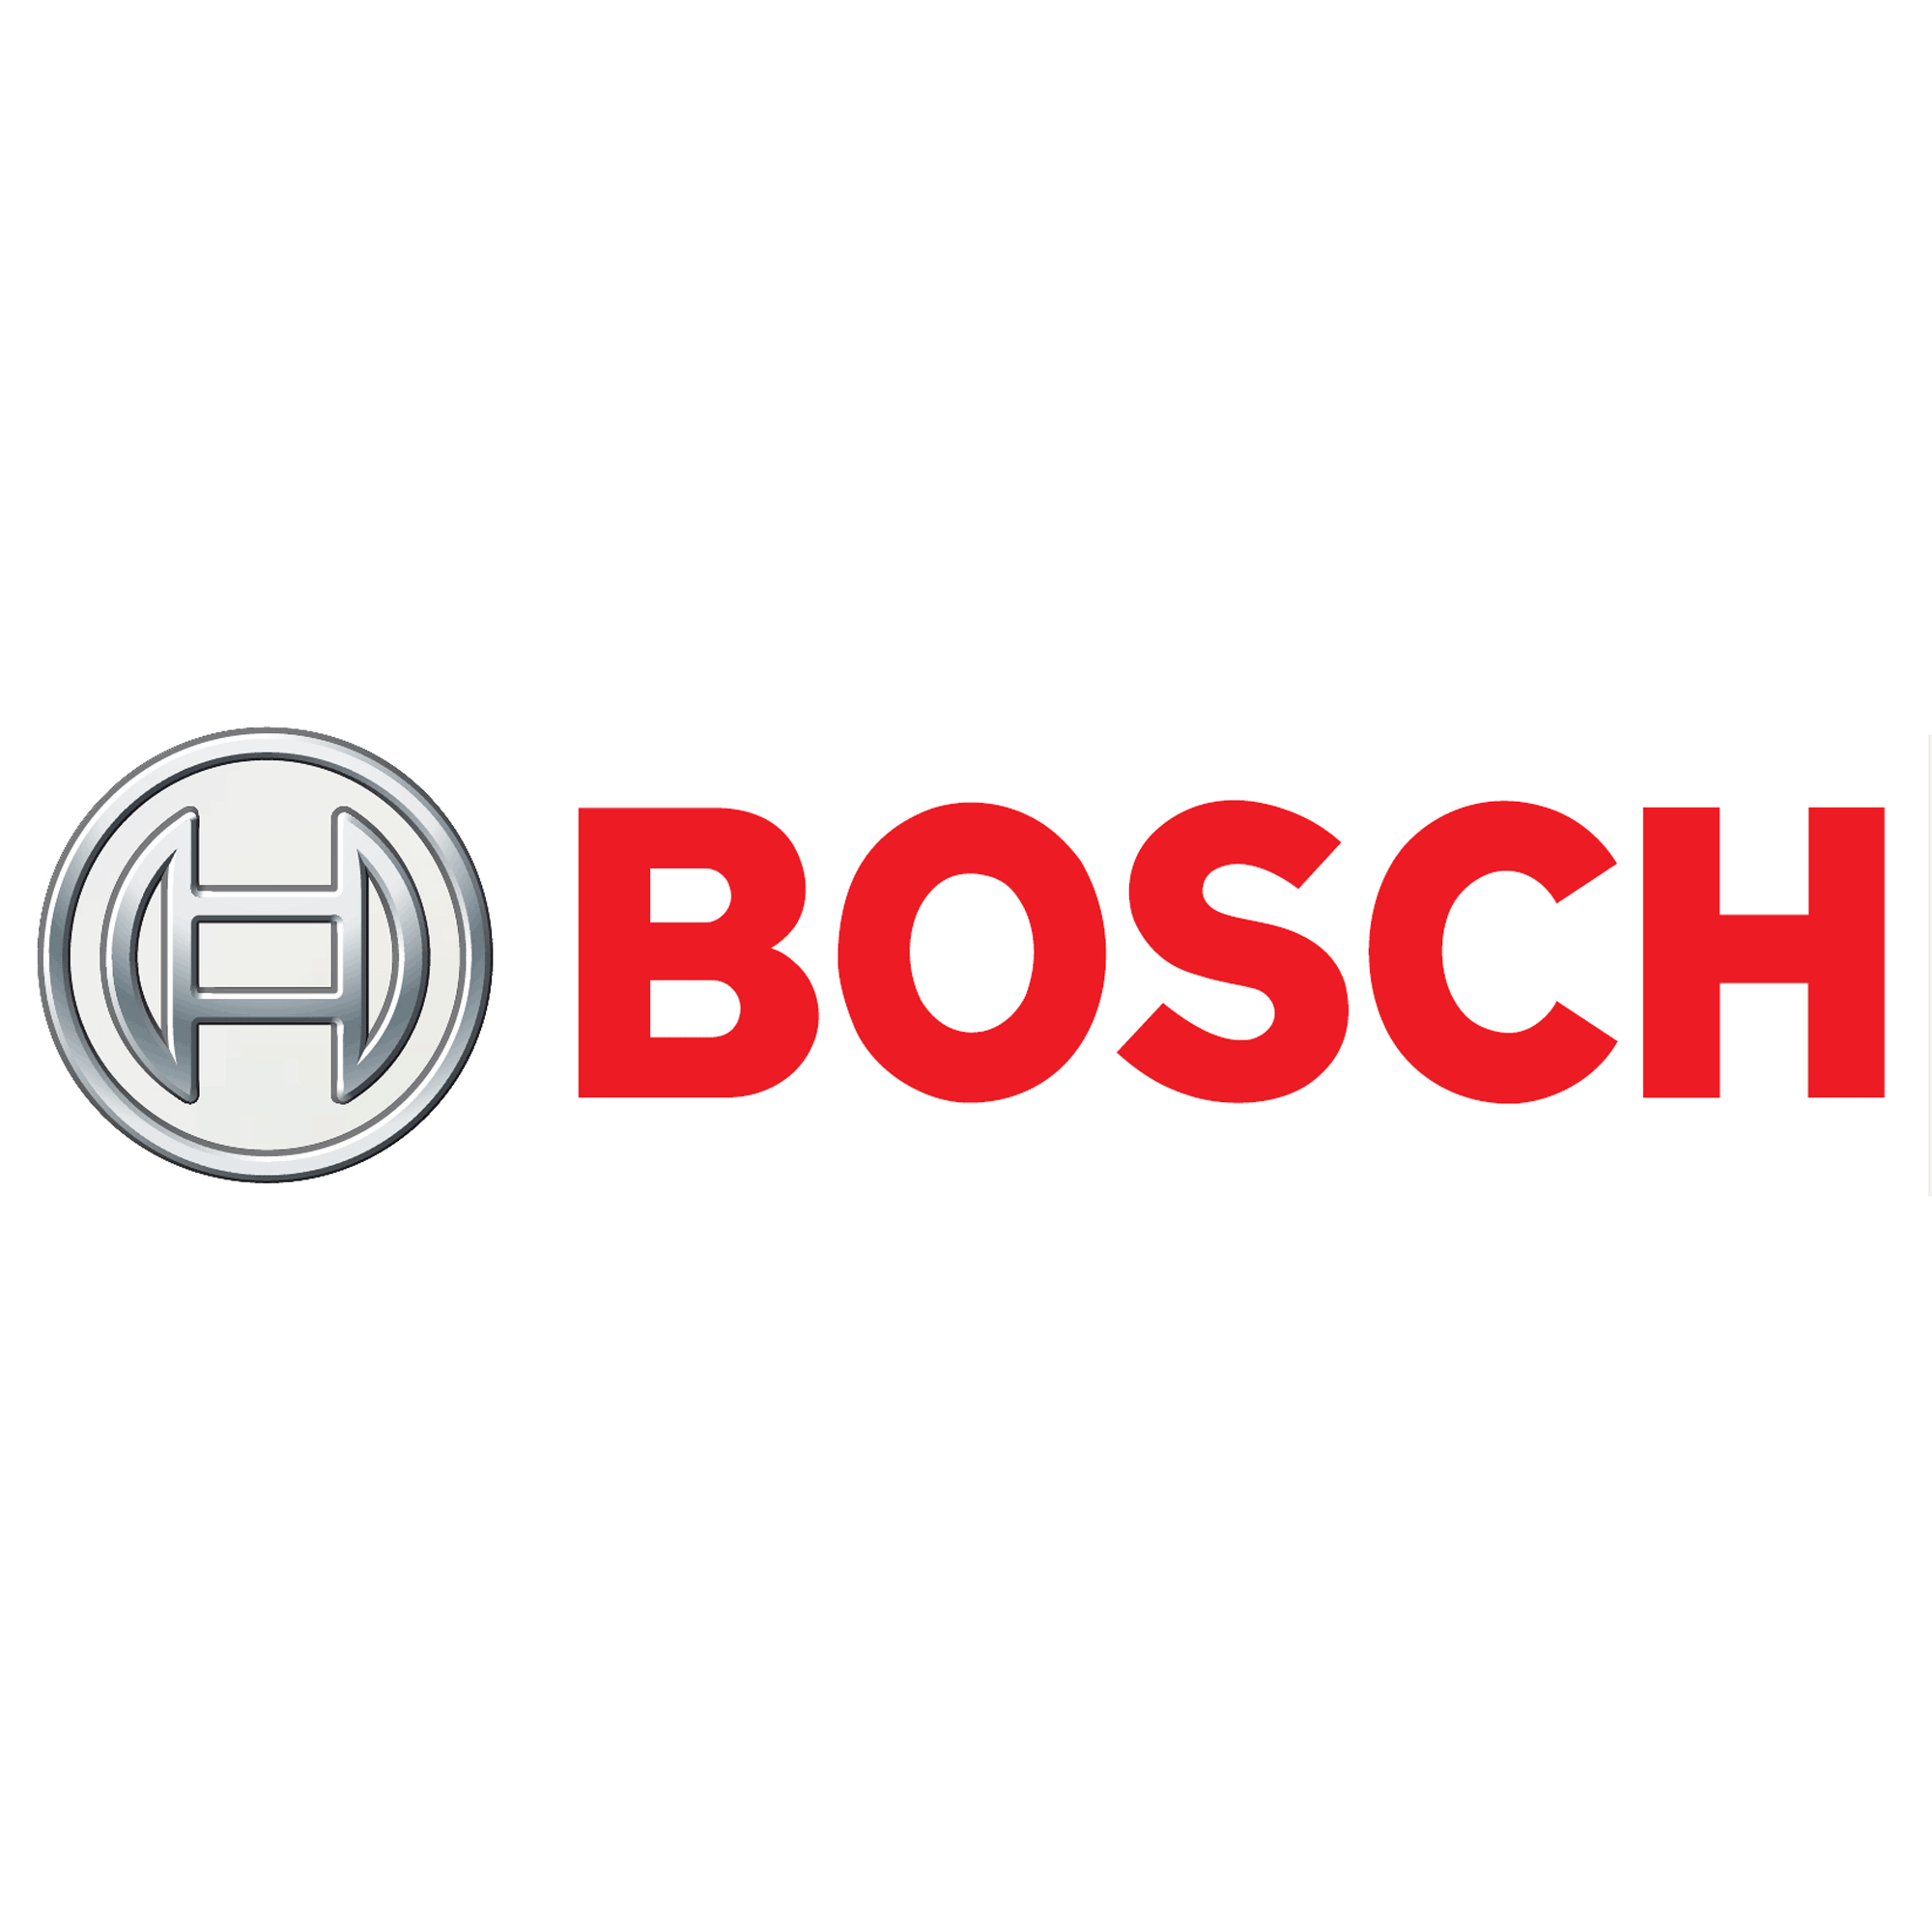 Bosch Servicio Técnico Garraf SAT 24h